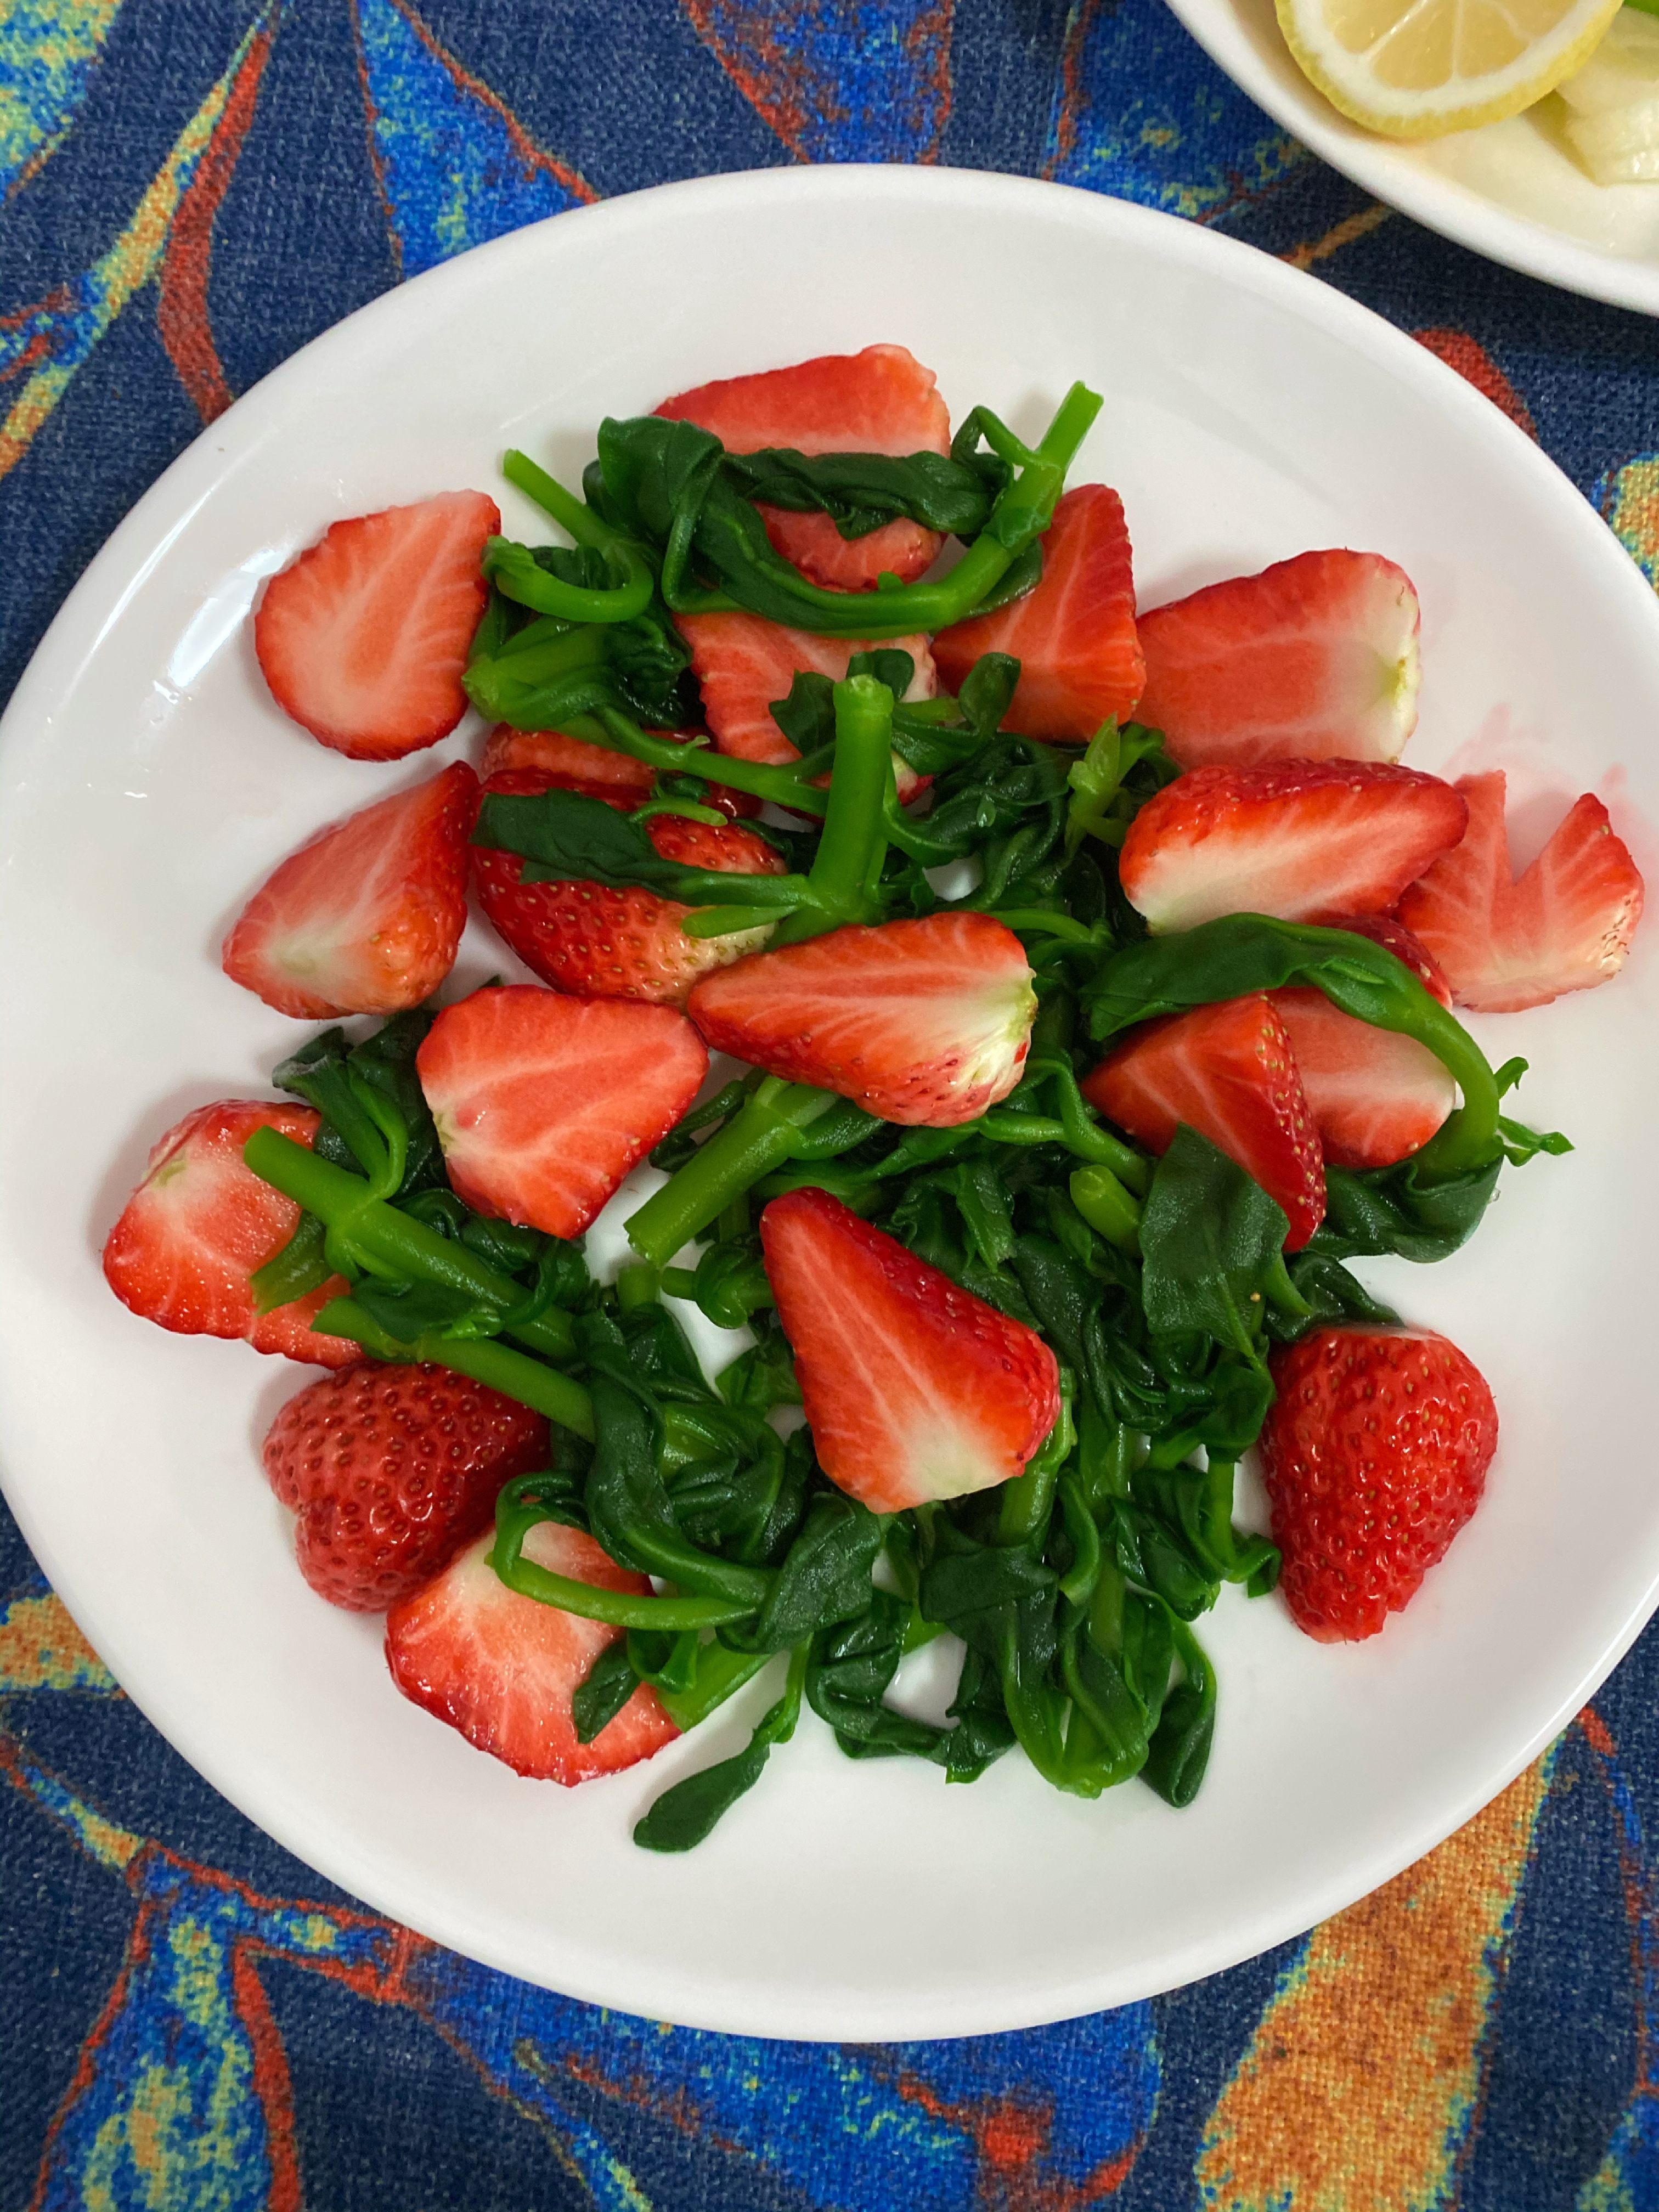 十分钟菜谱：穿心莲拌草莓的做法